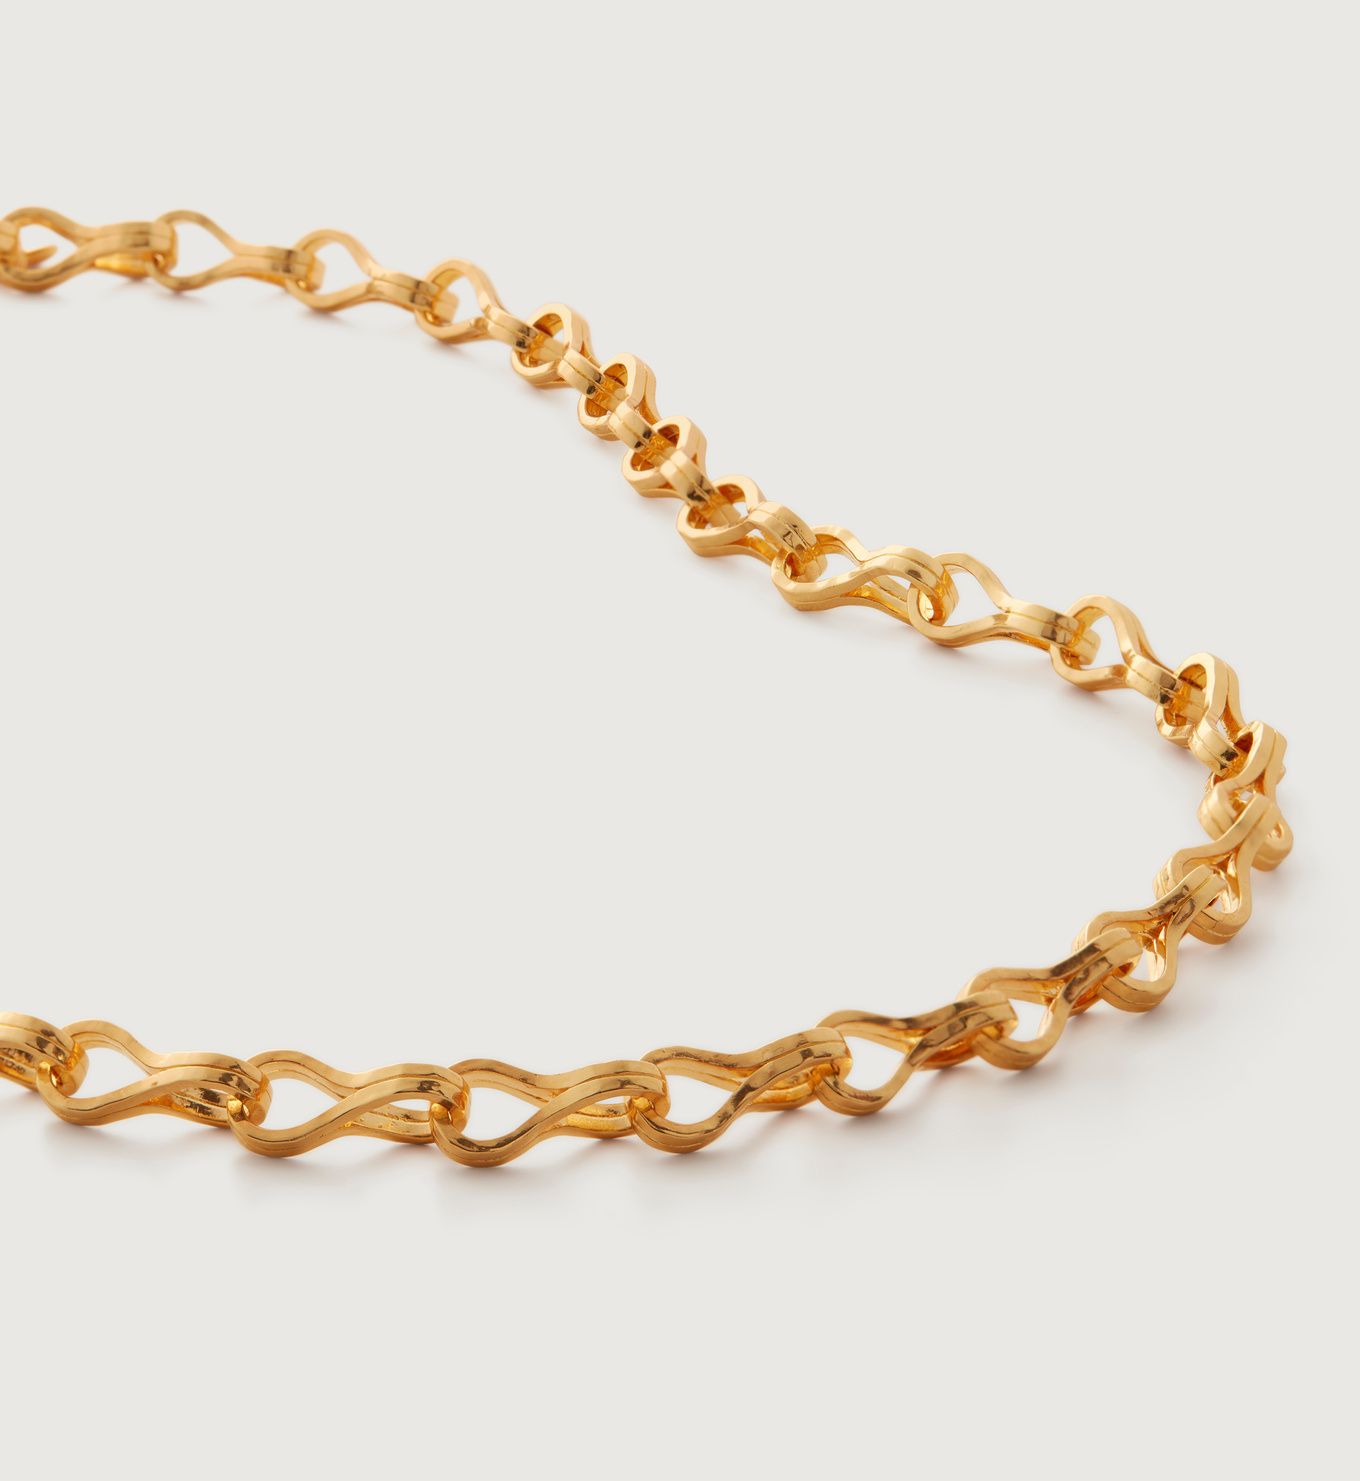 Infinity Link Necklace Adjustable 50cm/20” | Monica Vinader (Global)